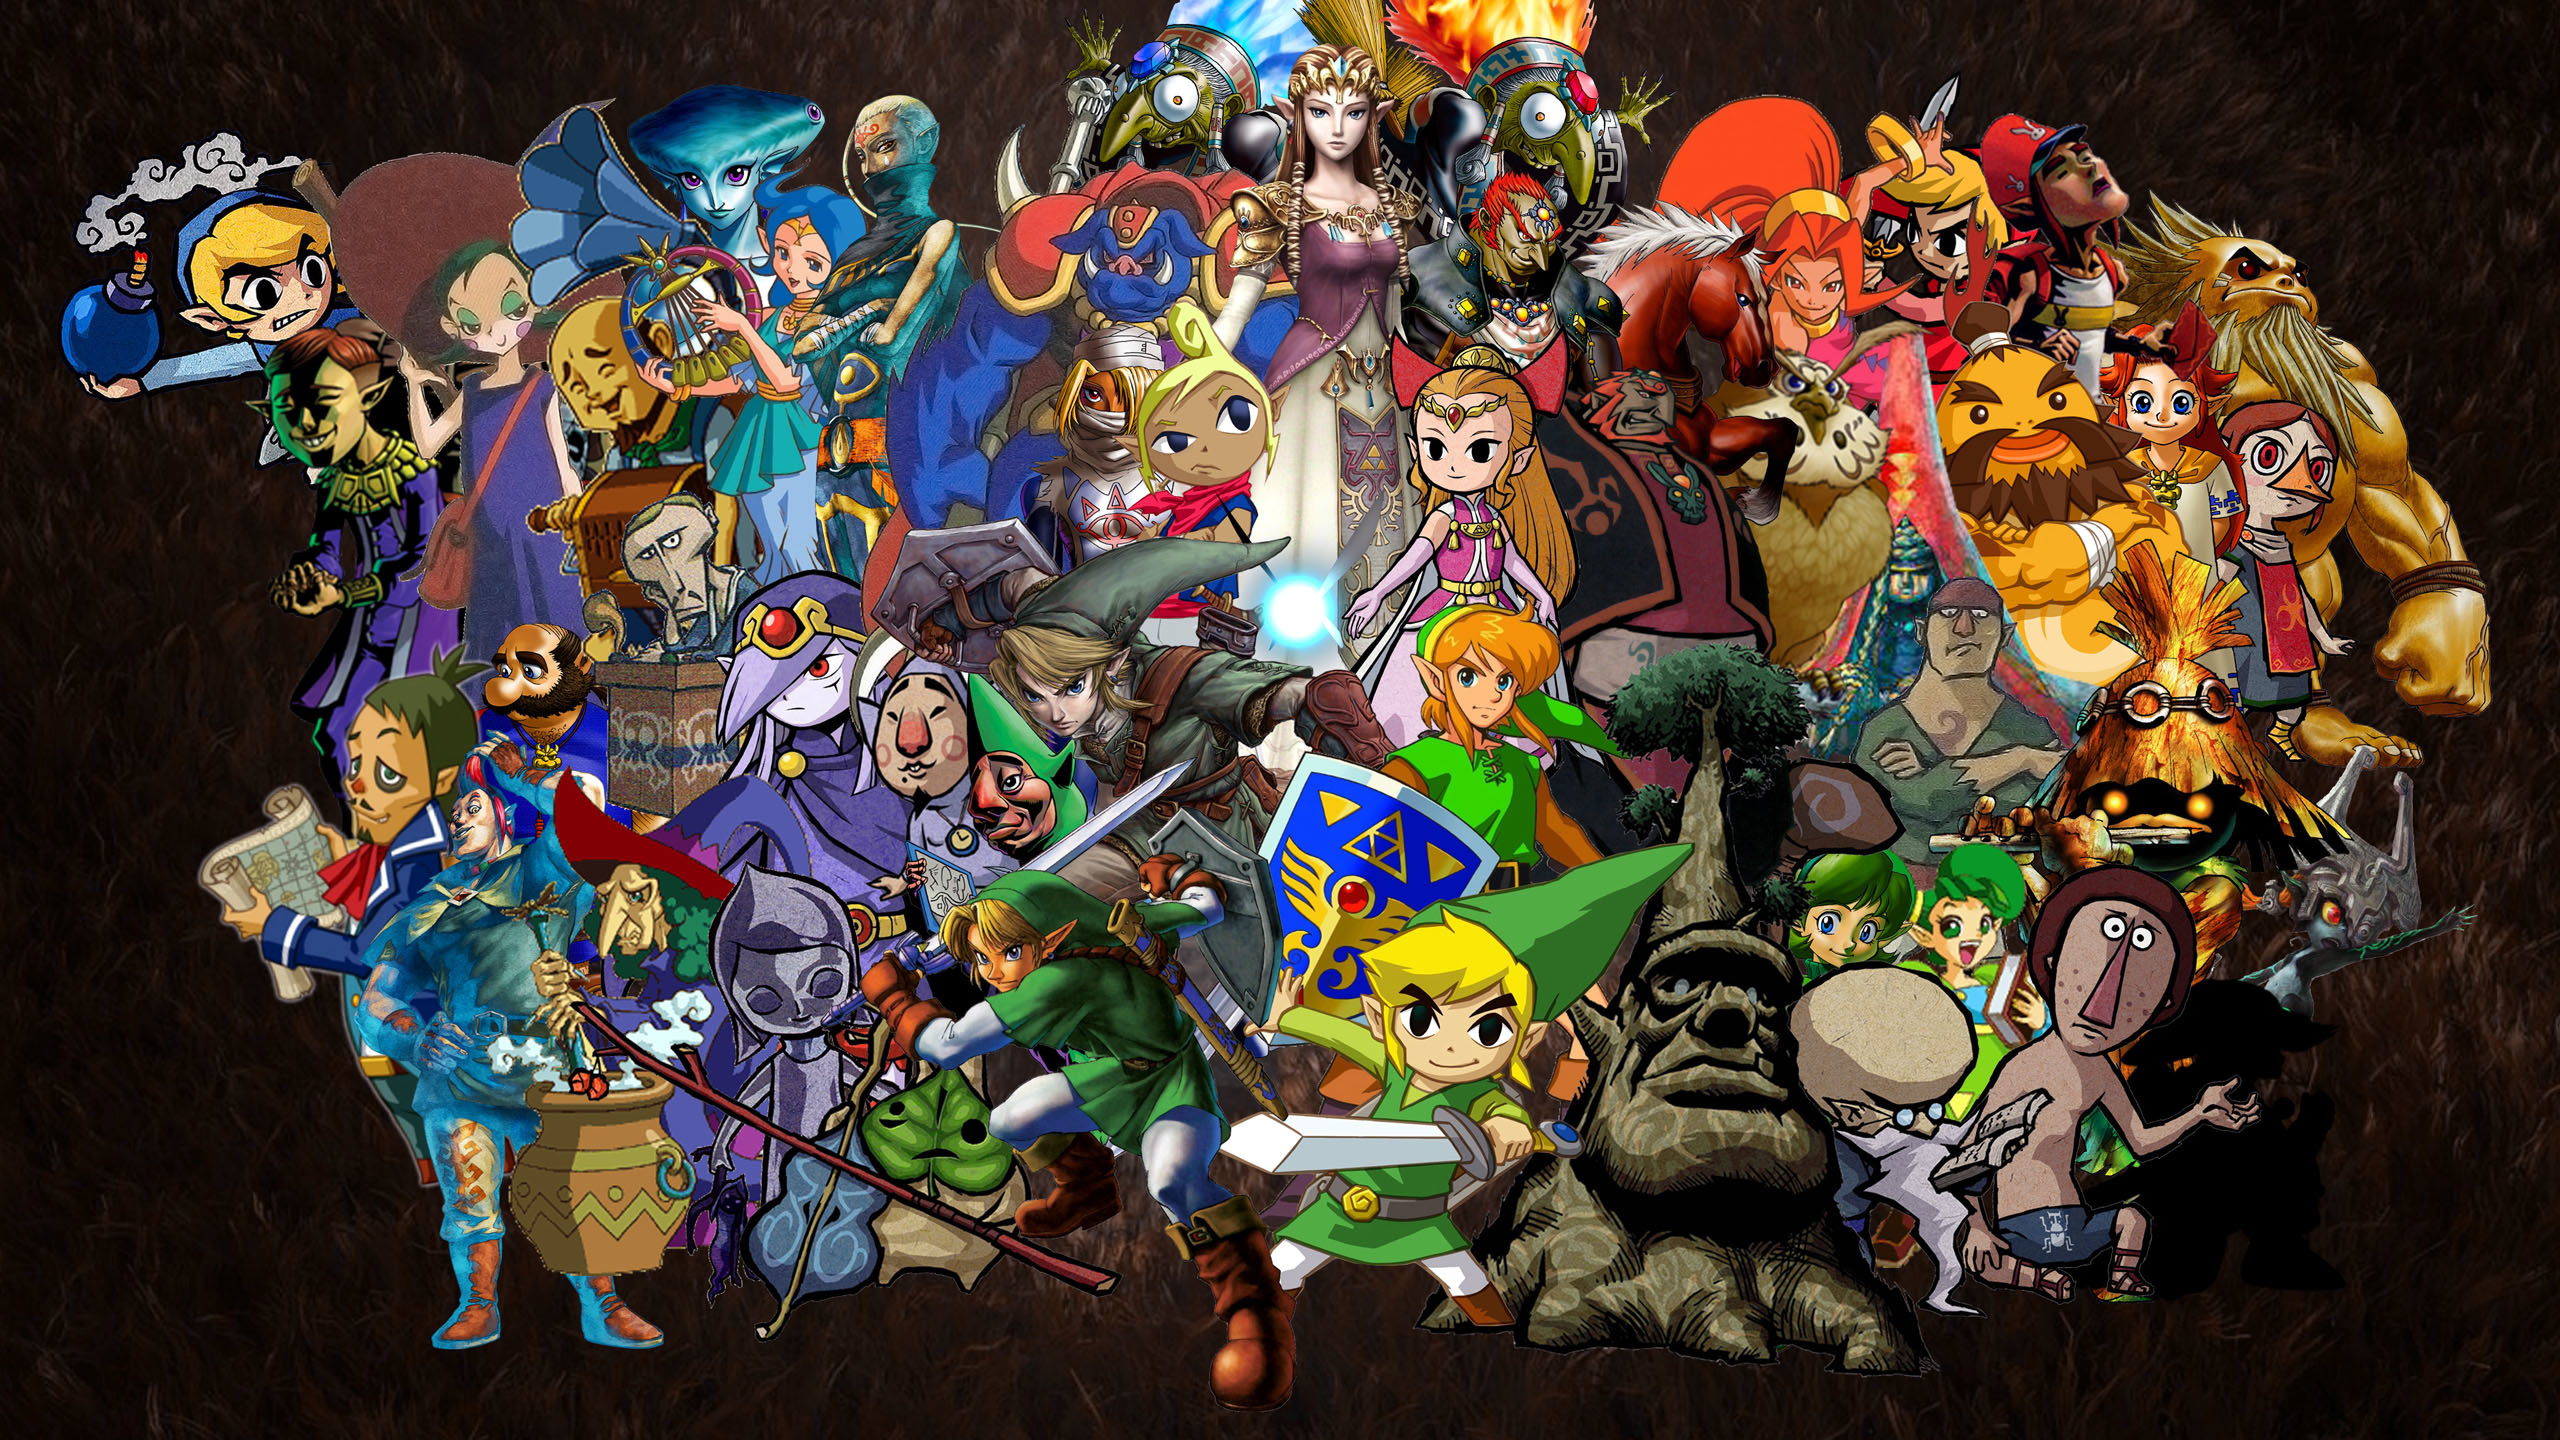 2560x1440 The Legend Of Zelda Wallpapers Wallpapers) – HD Wallpapers